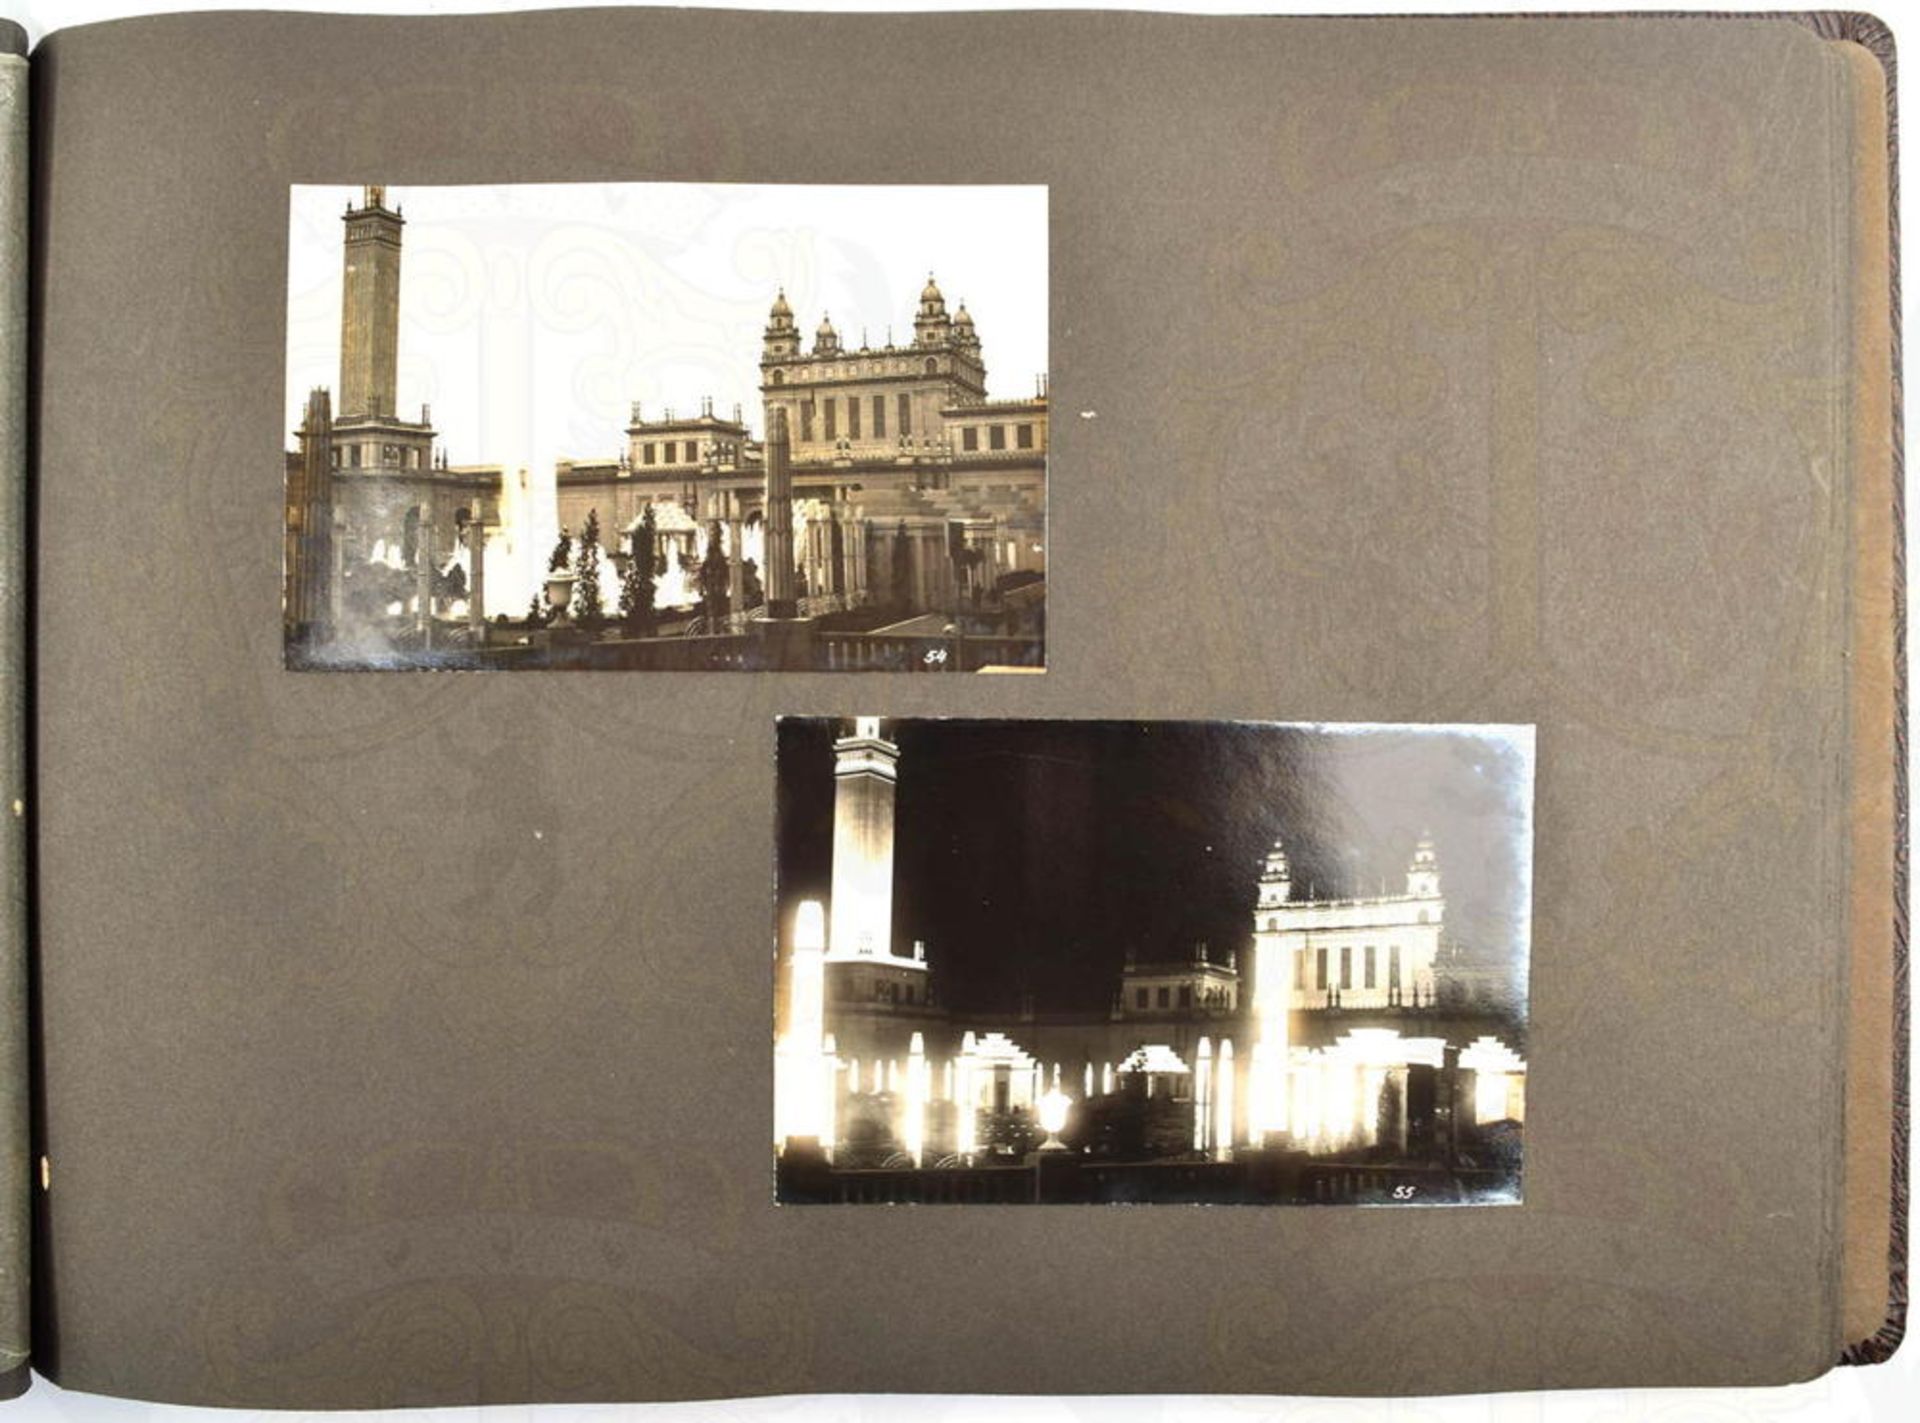 FOTOALBUM LEICHTER KREUZER KÖNIGSBERG, bei der Weltausstellung Barcelona 1929, mit 120 Fotos u. - Image 5 of 5